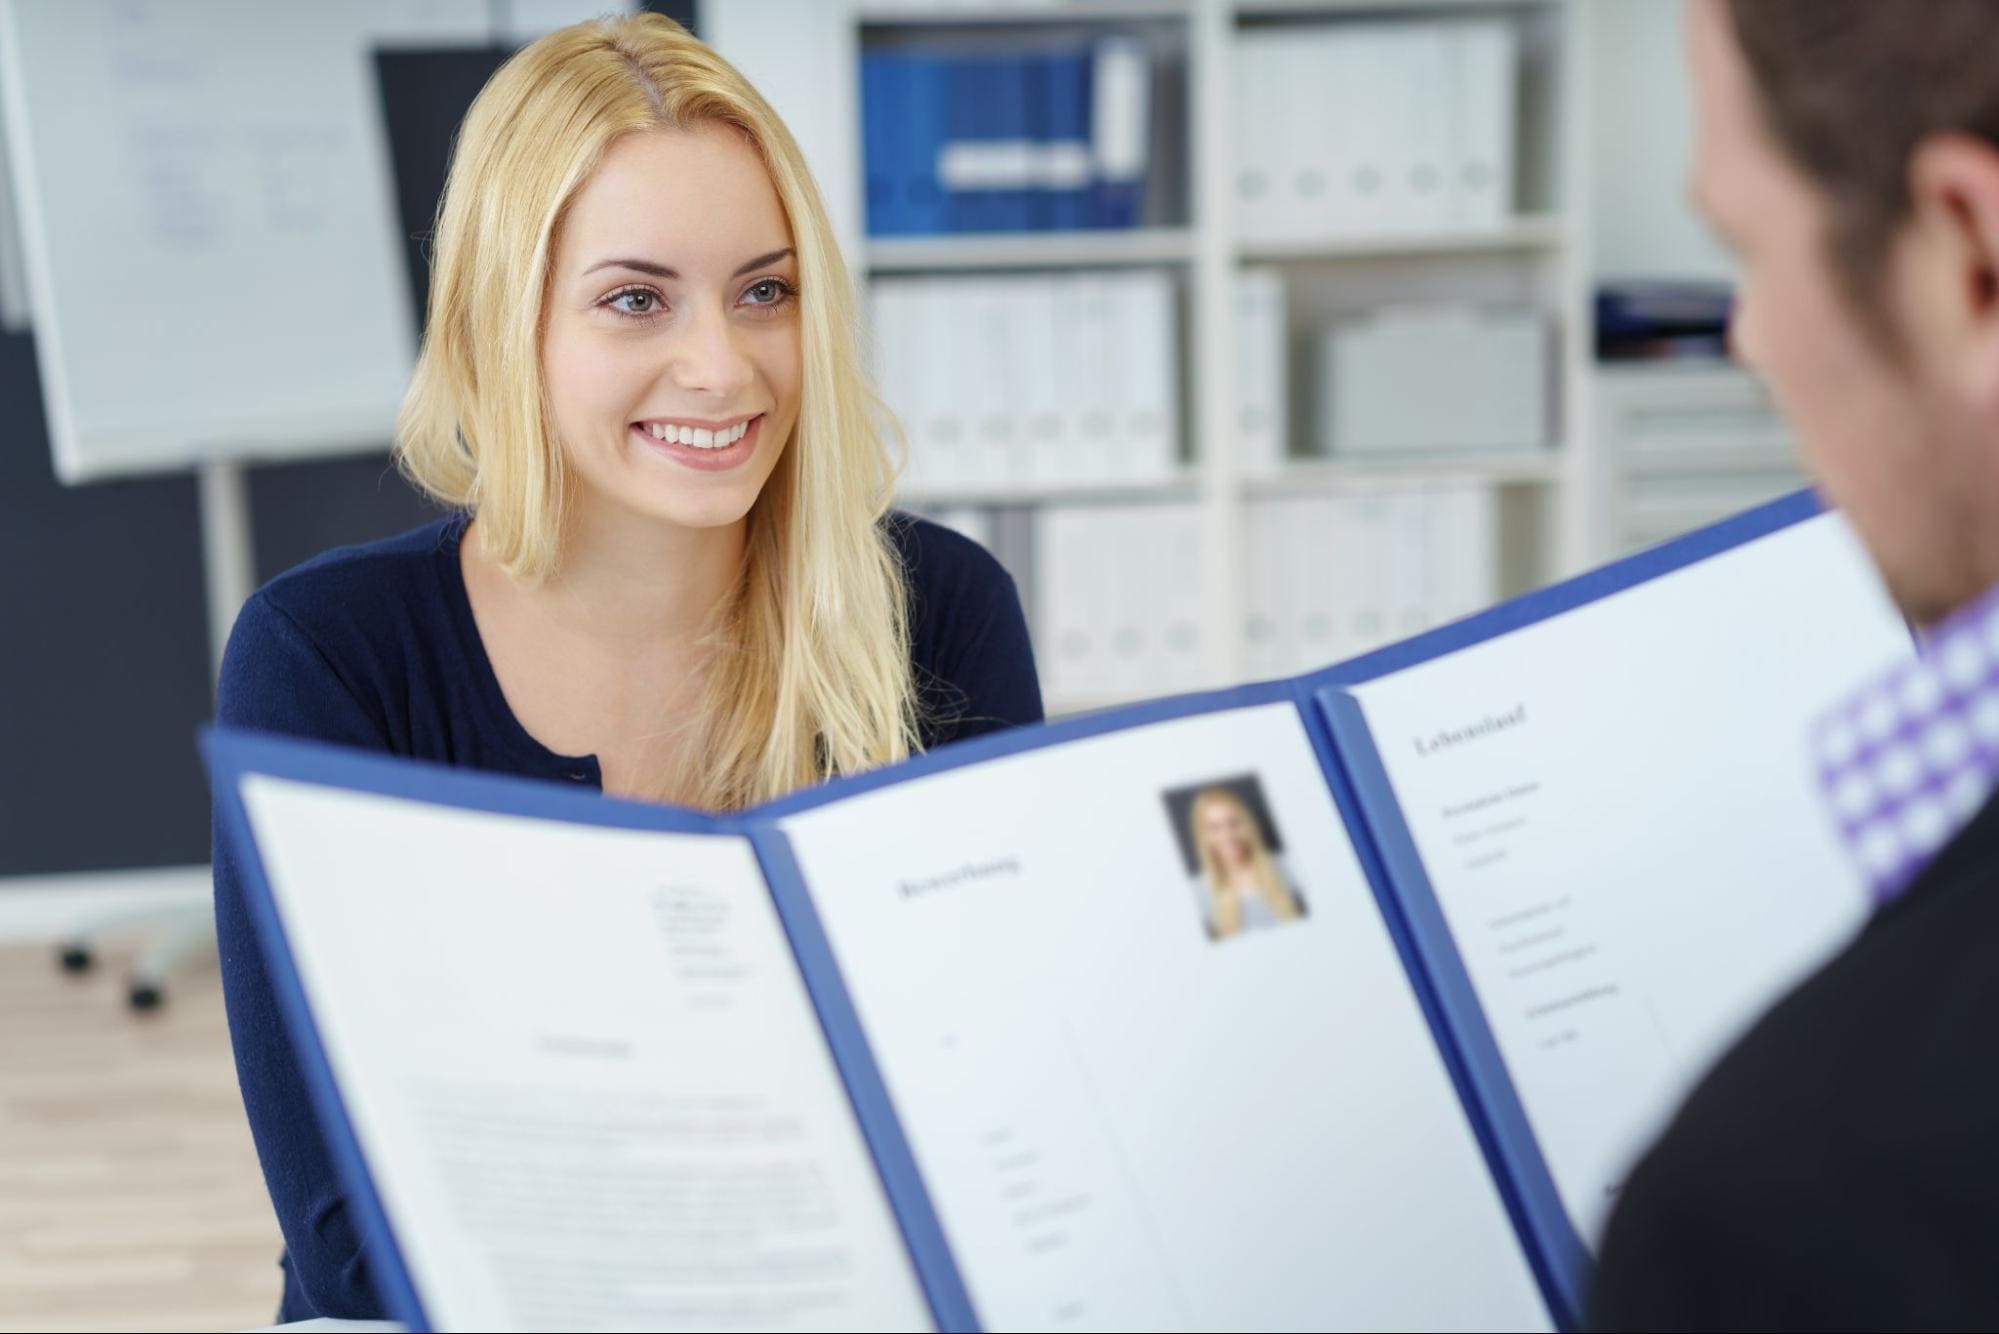 Hồ sơ xin việc cung cấp thông tin quan trọng đến nhà tuyển dụng